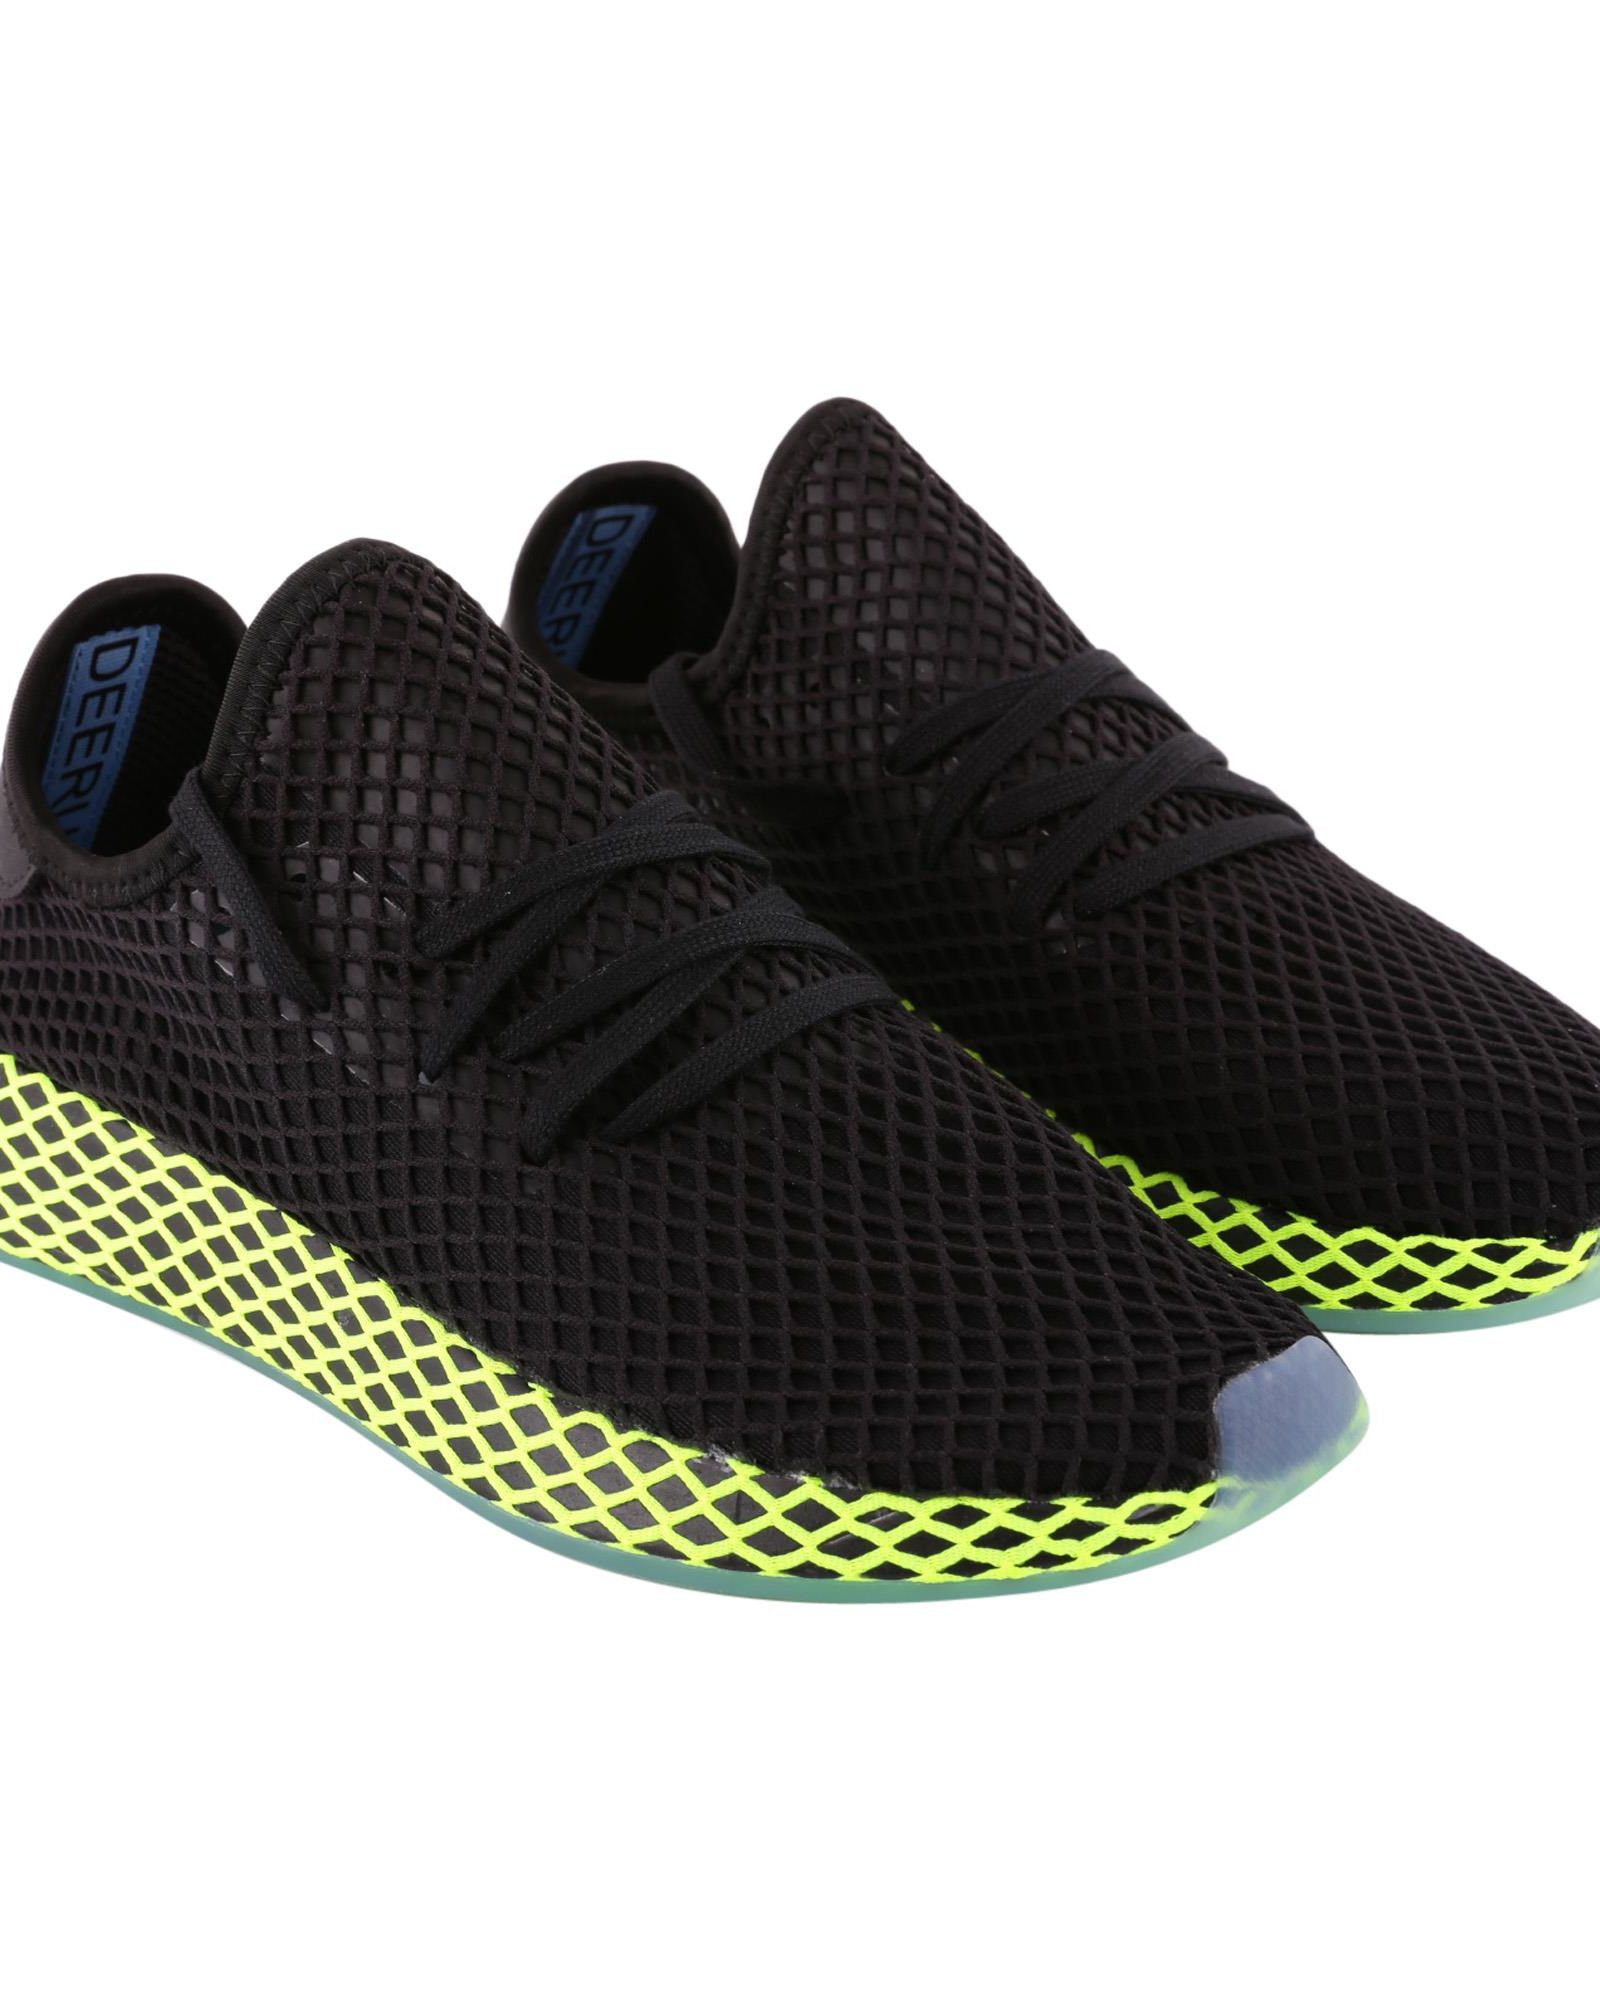 Adidas Originals Deerupt Runner Sneakers In Black - Green | ModeSens